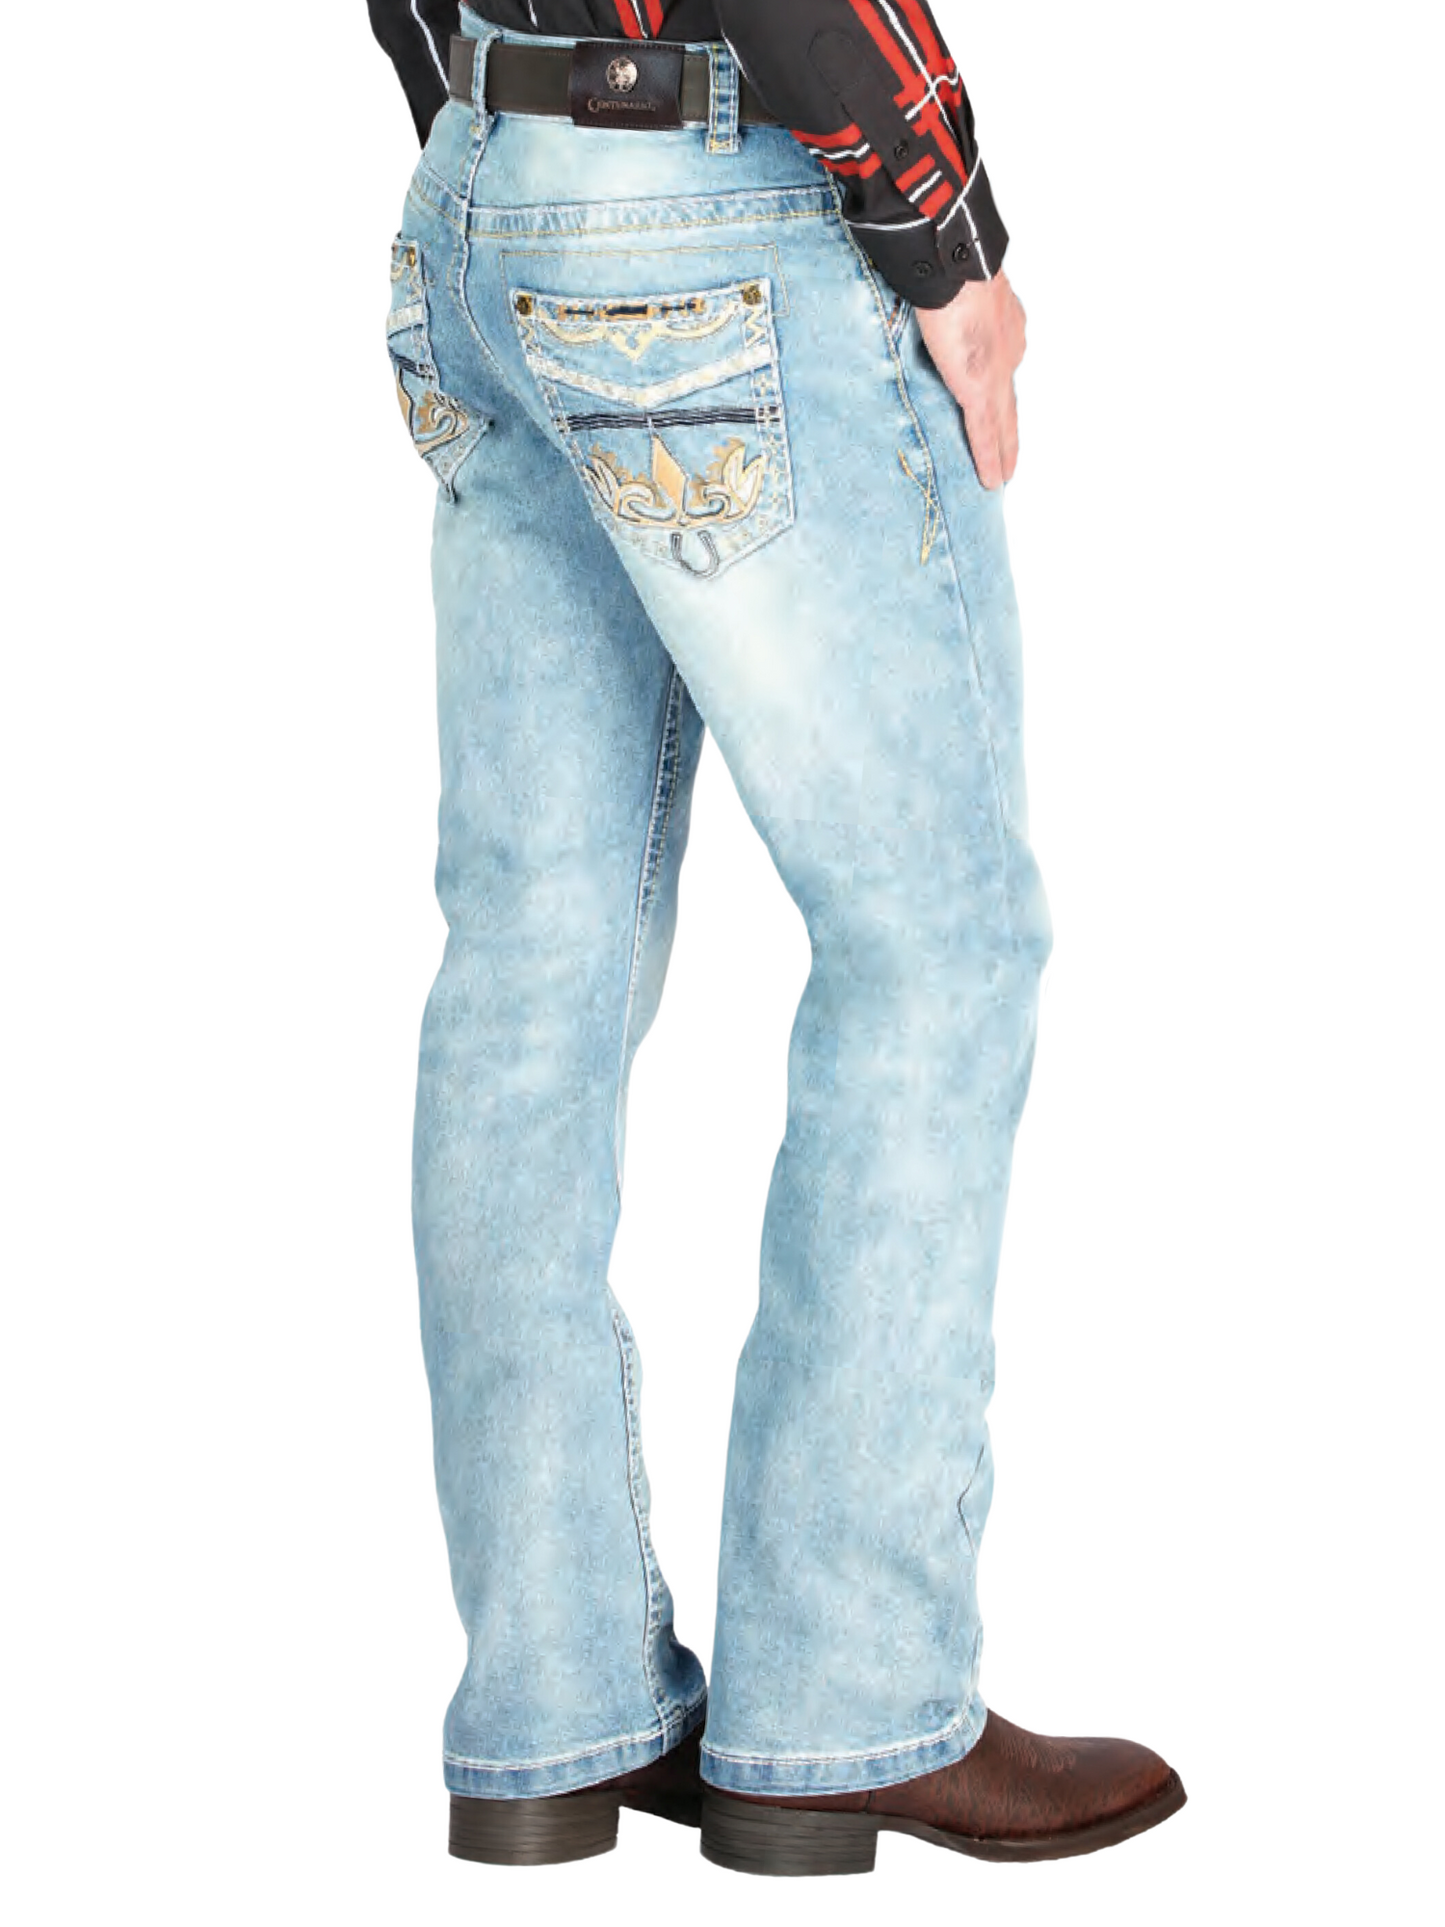 Pantalon Vaquero de Mezclilla Boot Cut Azul Claro para Hombre 'Centenario' - ID: 44842 Denim Jeans Centenario 